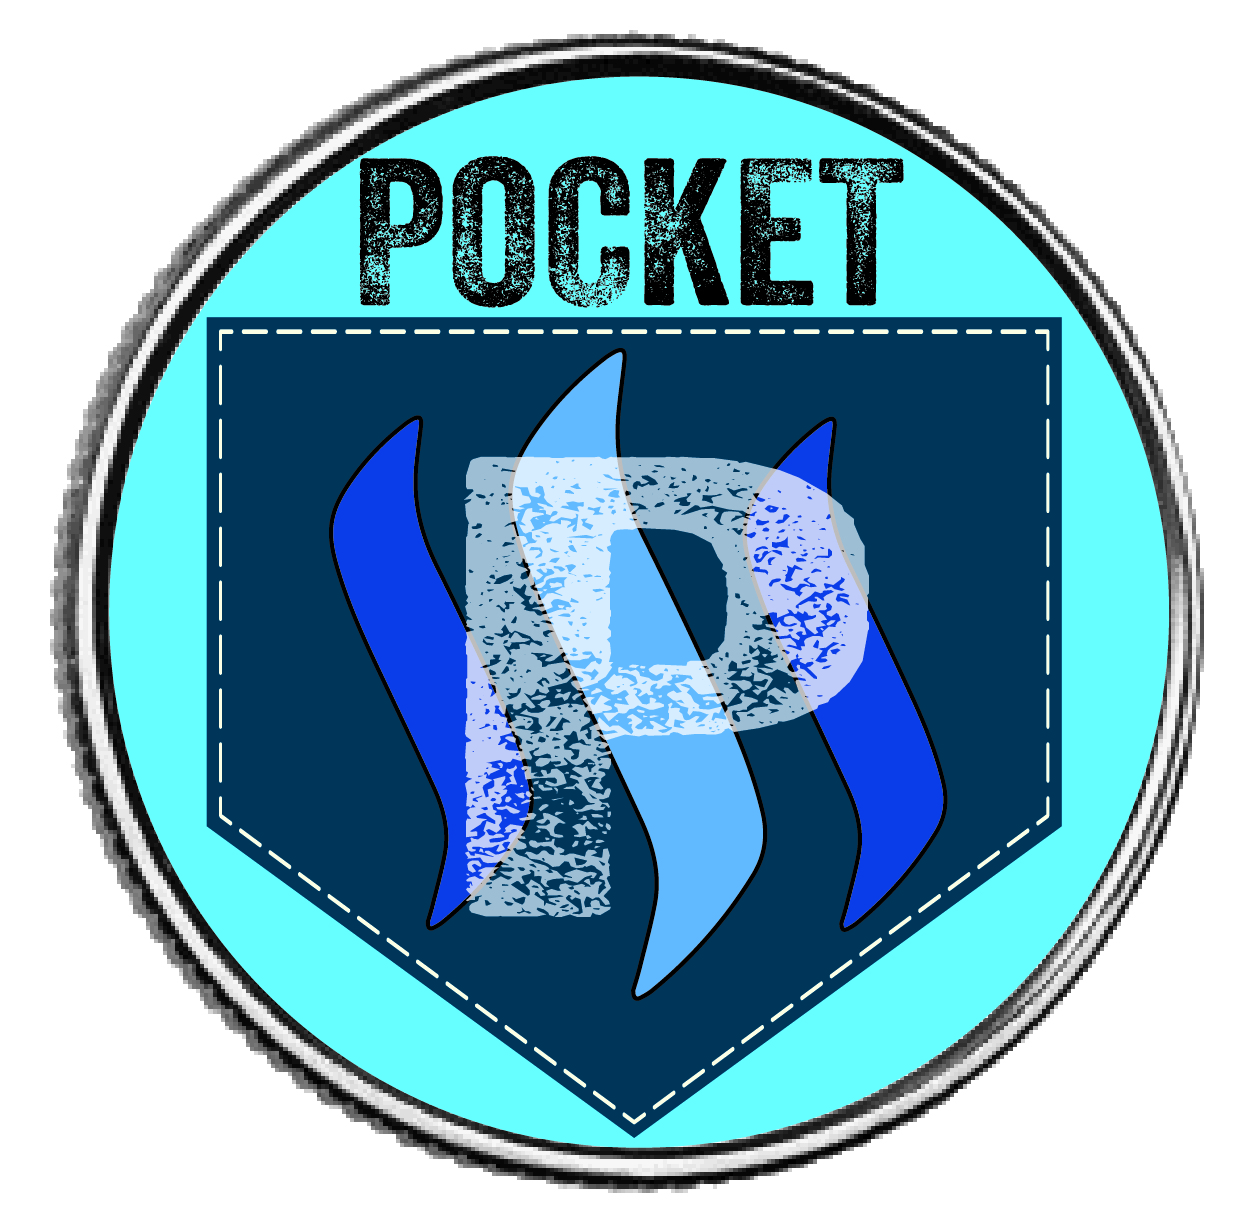 Pocket_Logo_2.jpg